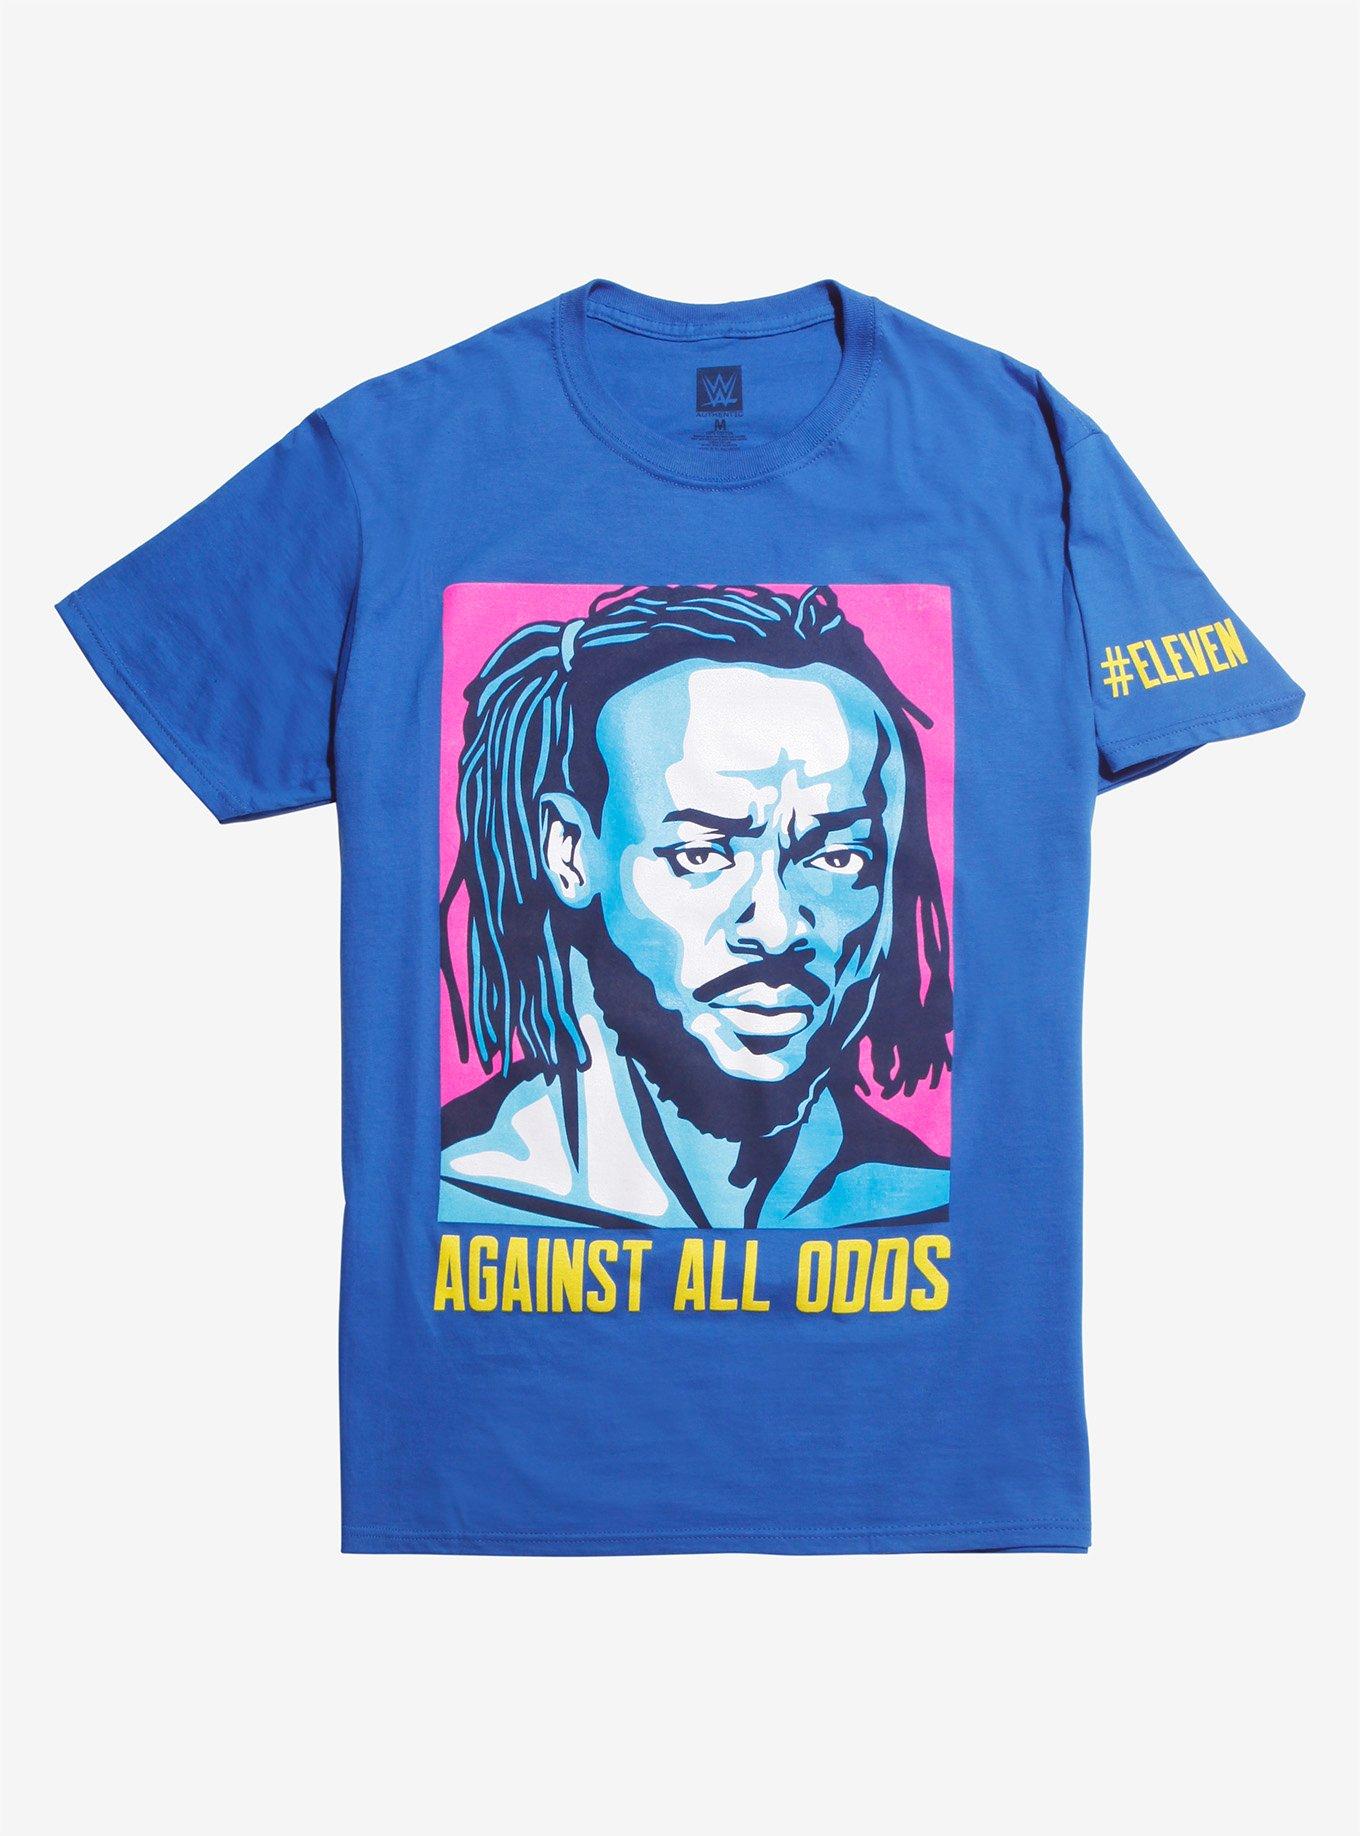 WWE Kofi Kingston 'Against All Odds' Custom Shirt For Mattel Figures. 